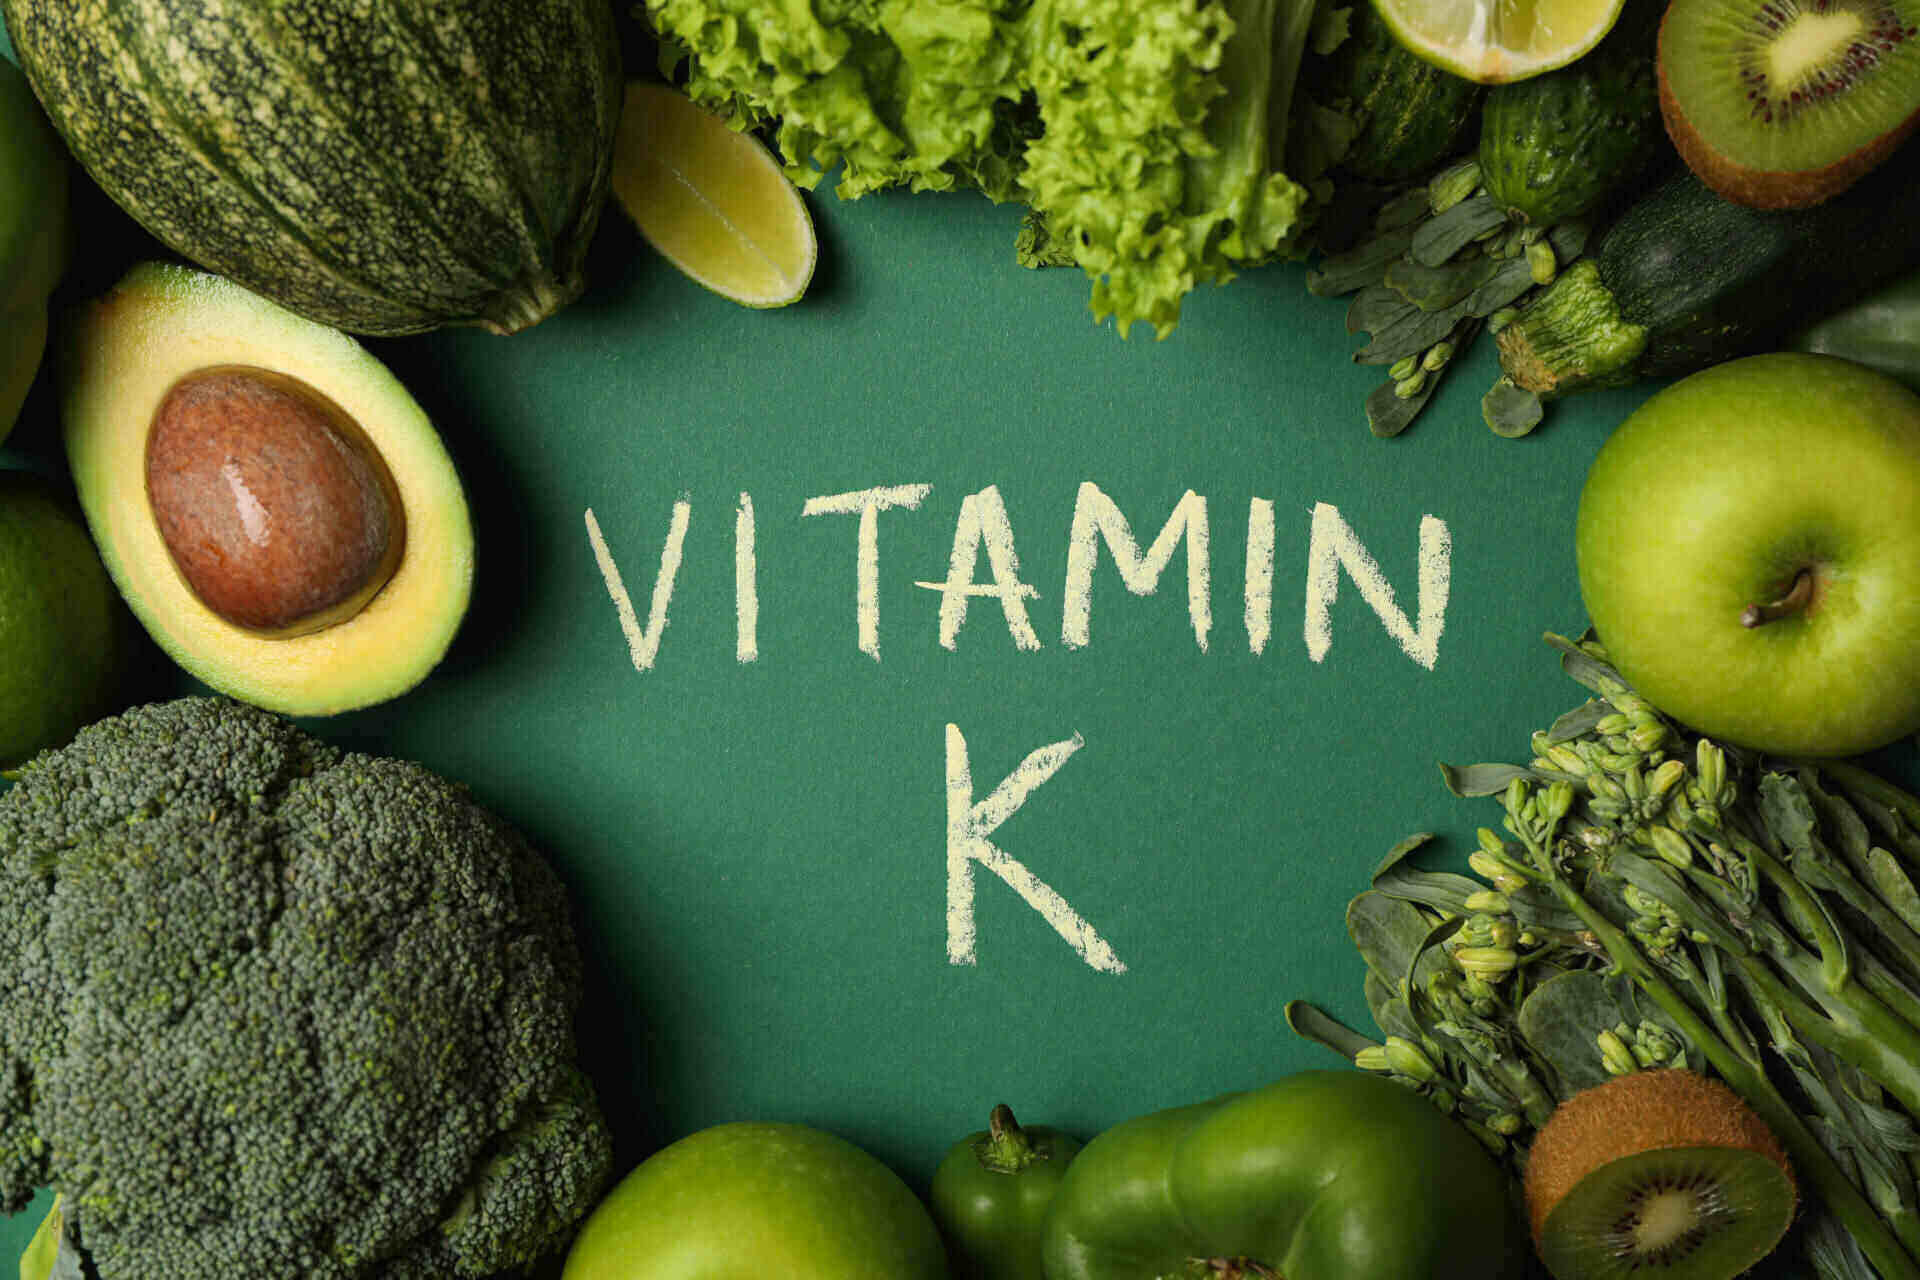 Какво ви заплашва при дефицит на витамин К2?